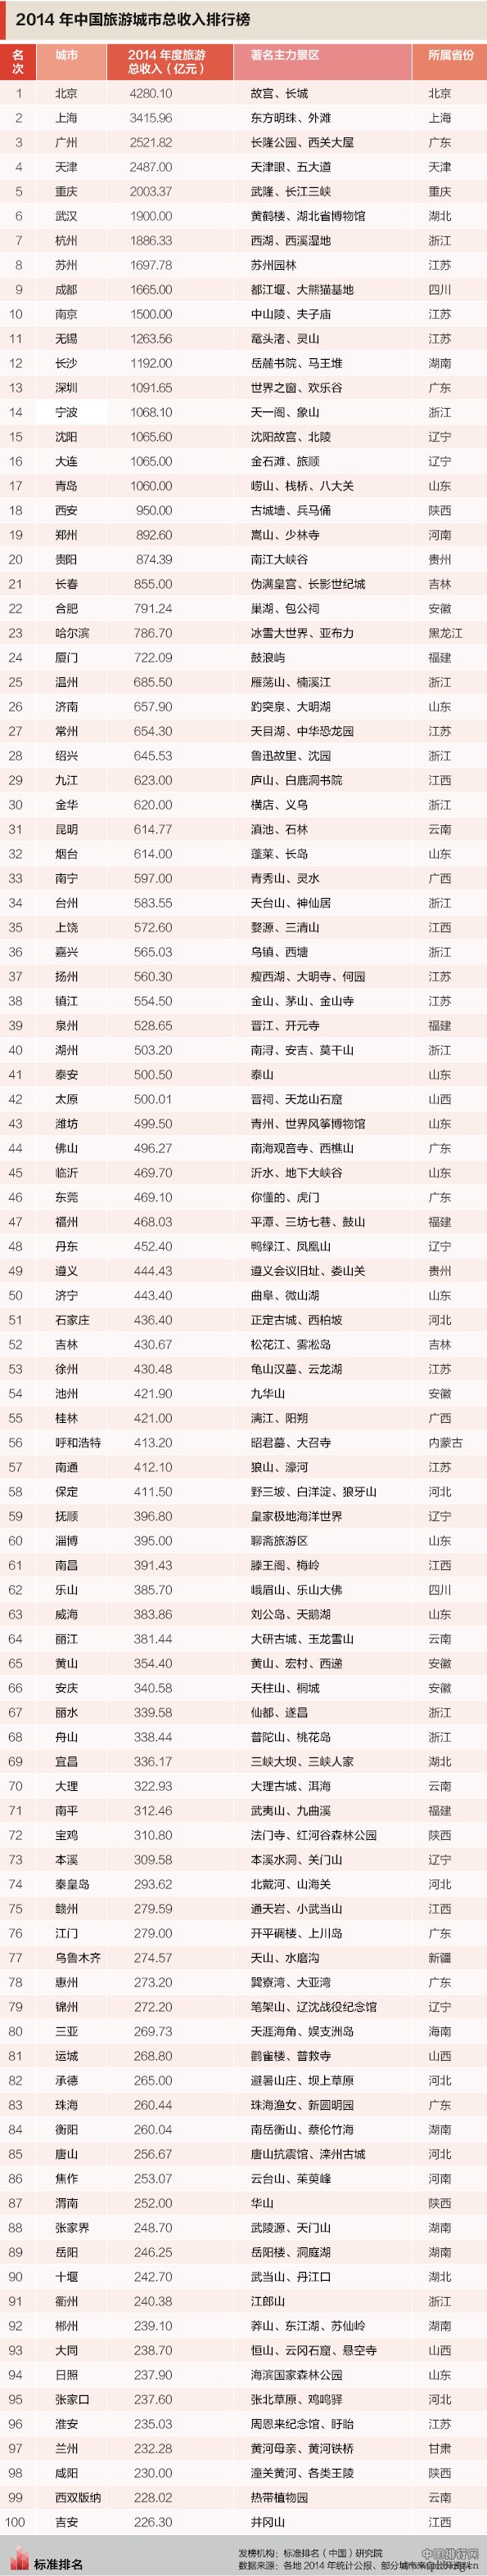 2014年中国旅游城市总收入排行榜